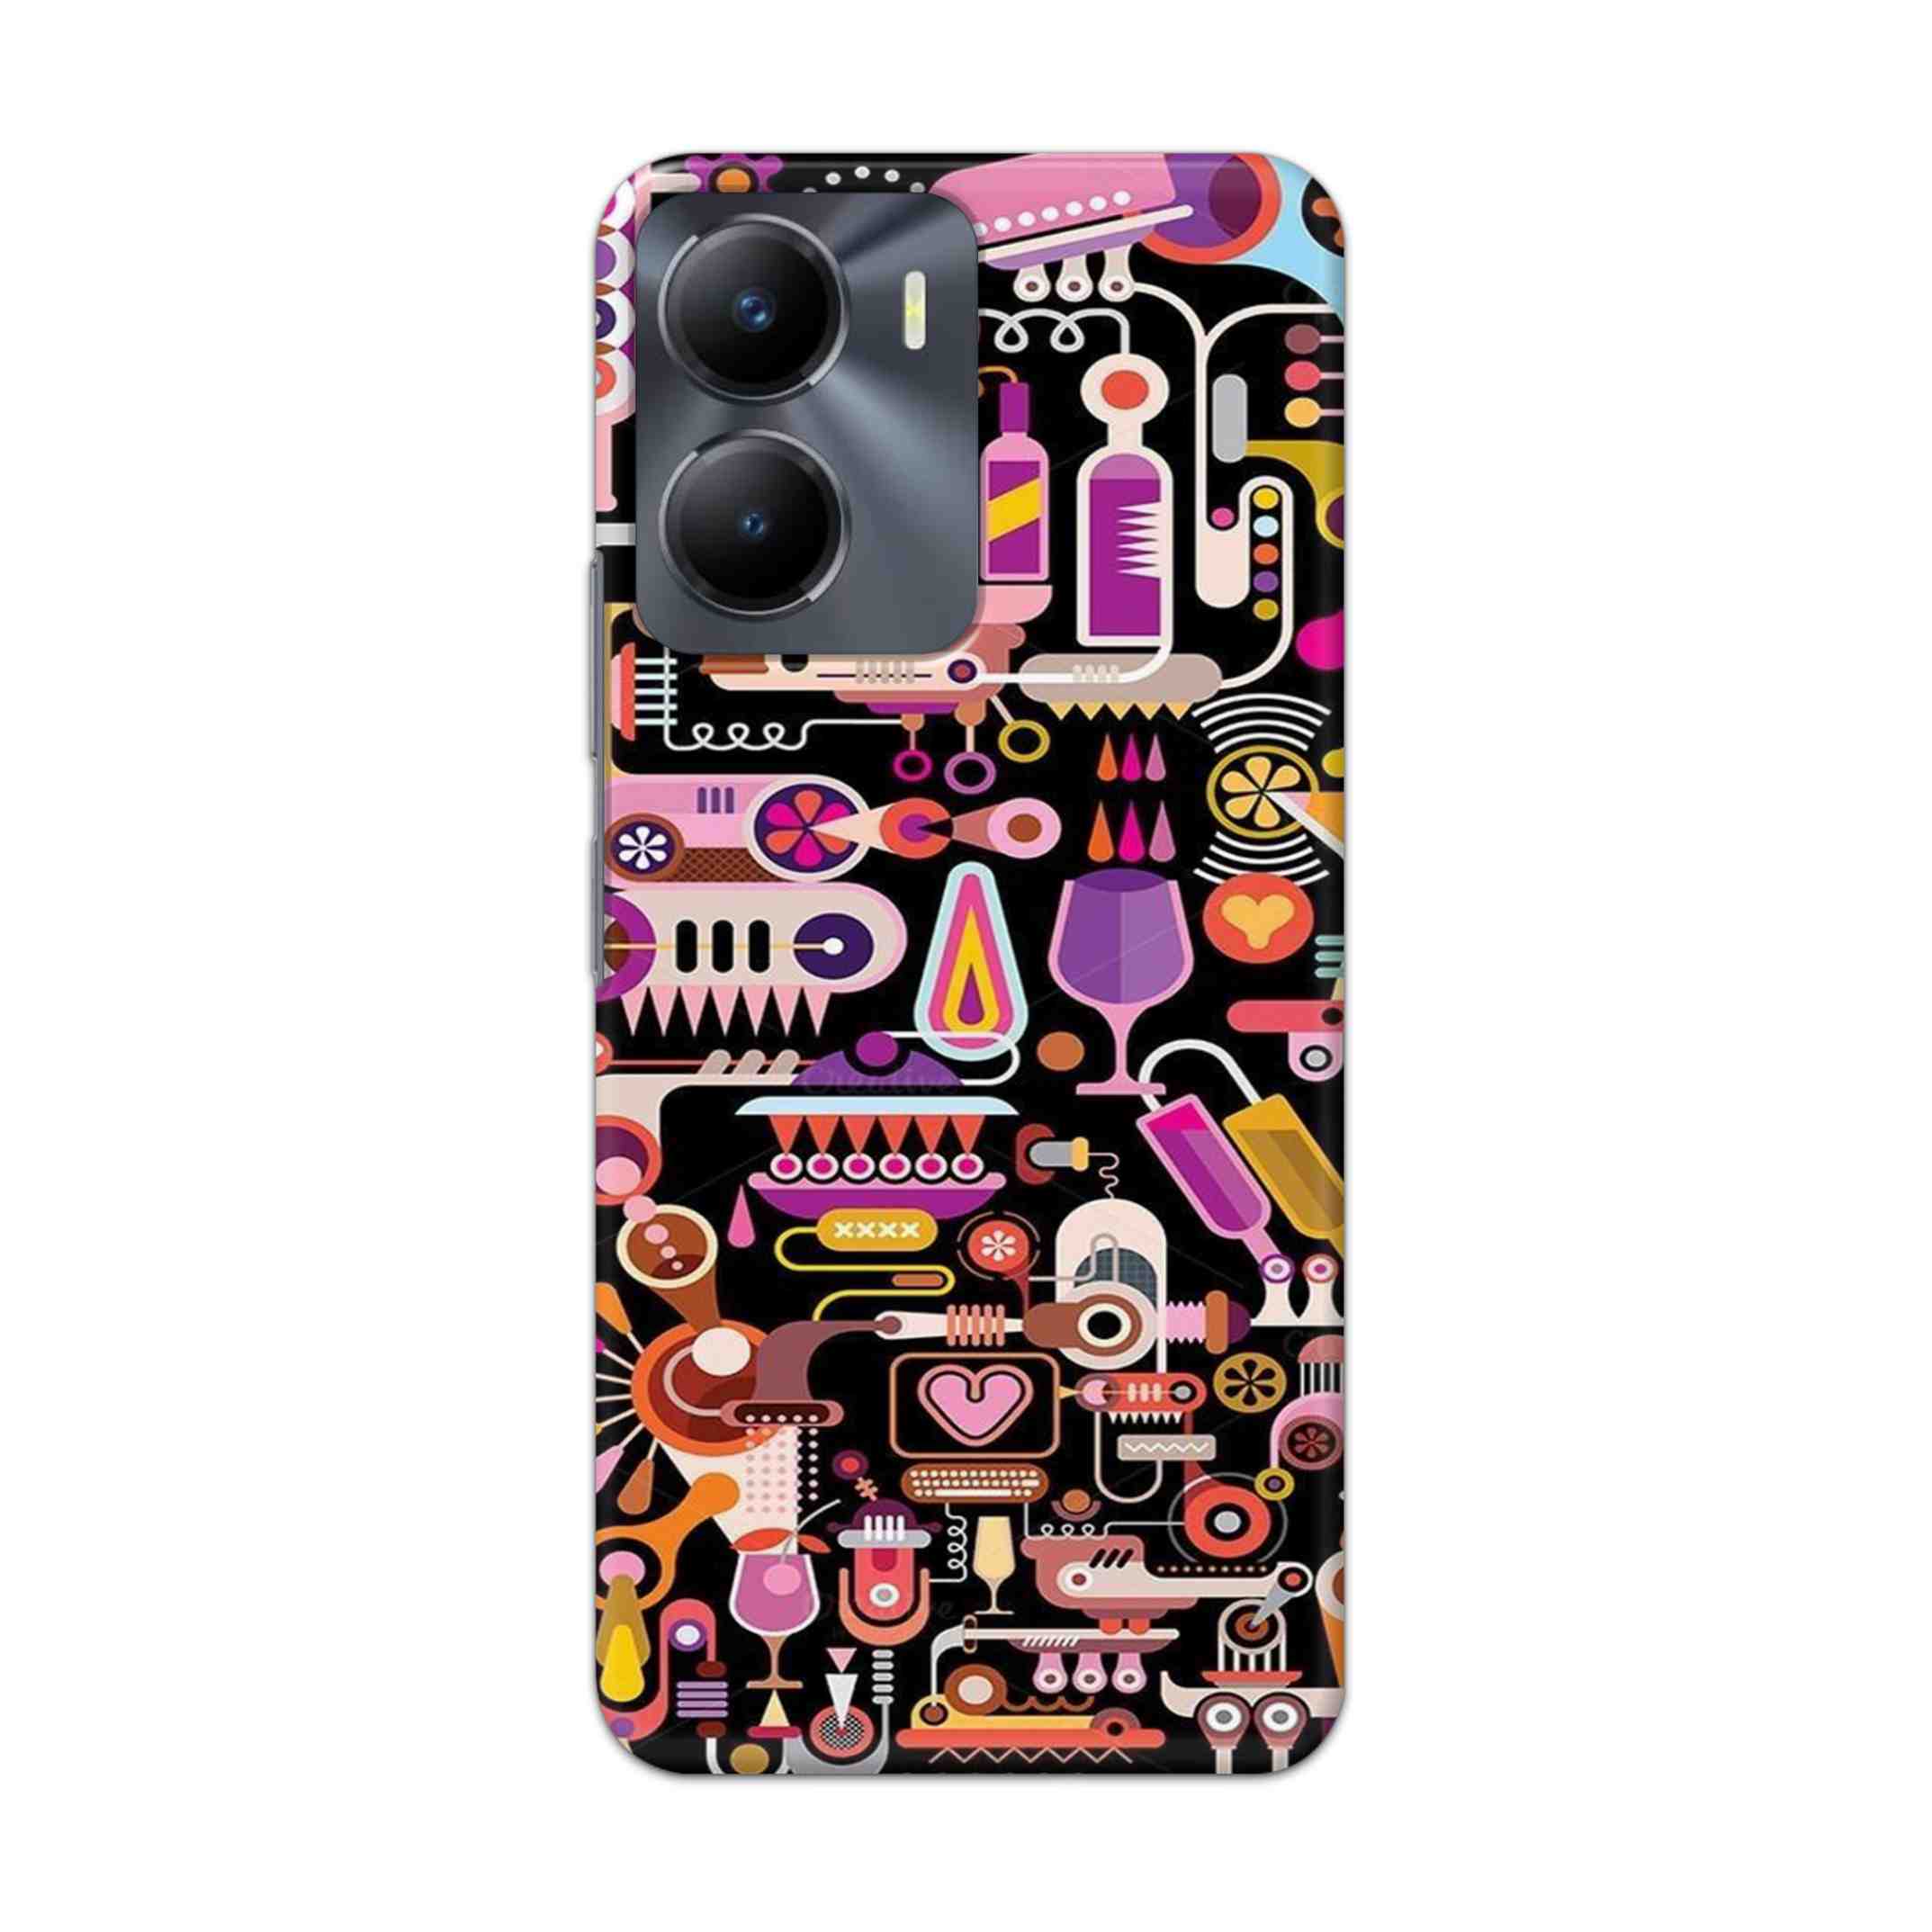 Buy Lab Art Hard Back Mobile Phone Case Cover For Vivo Y56 Online